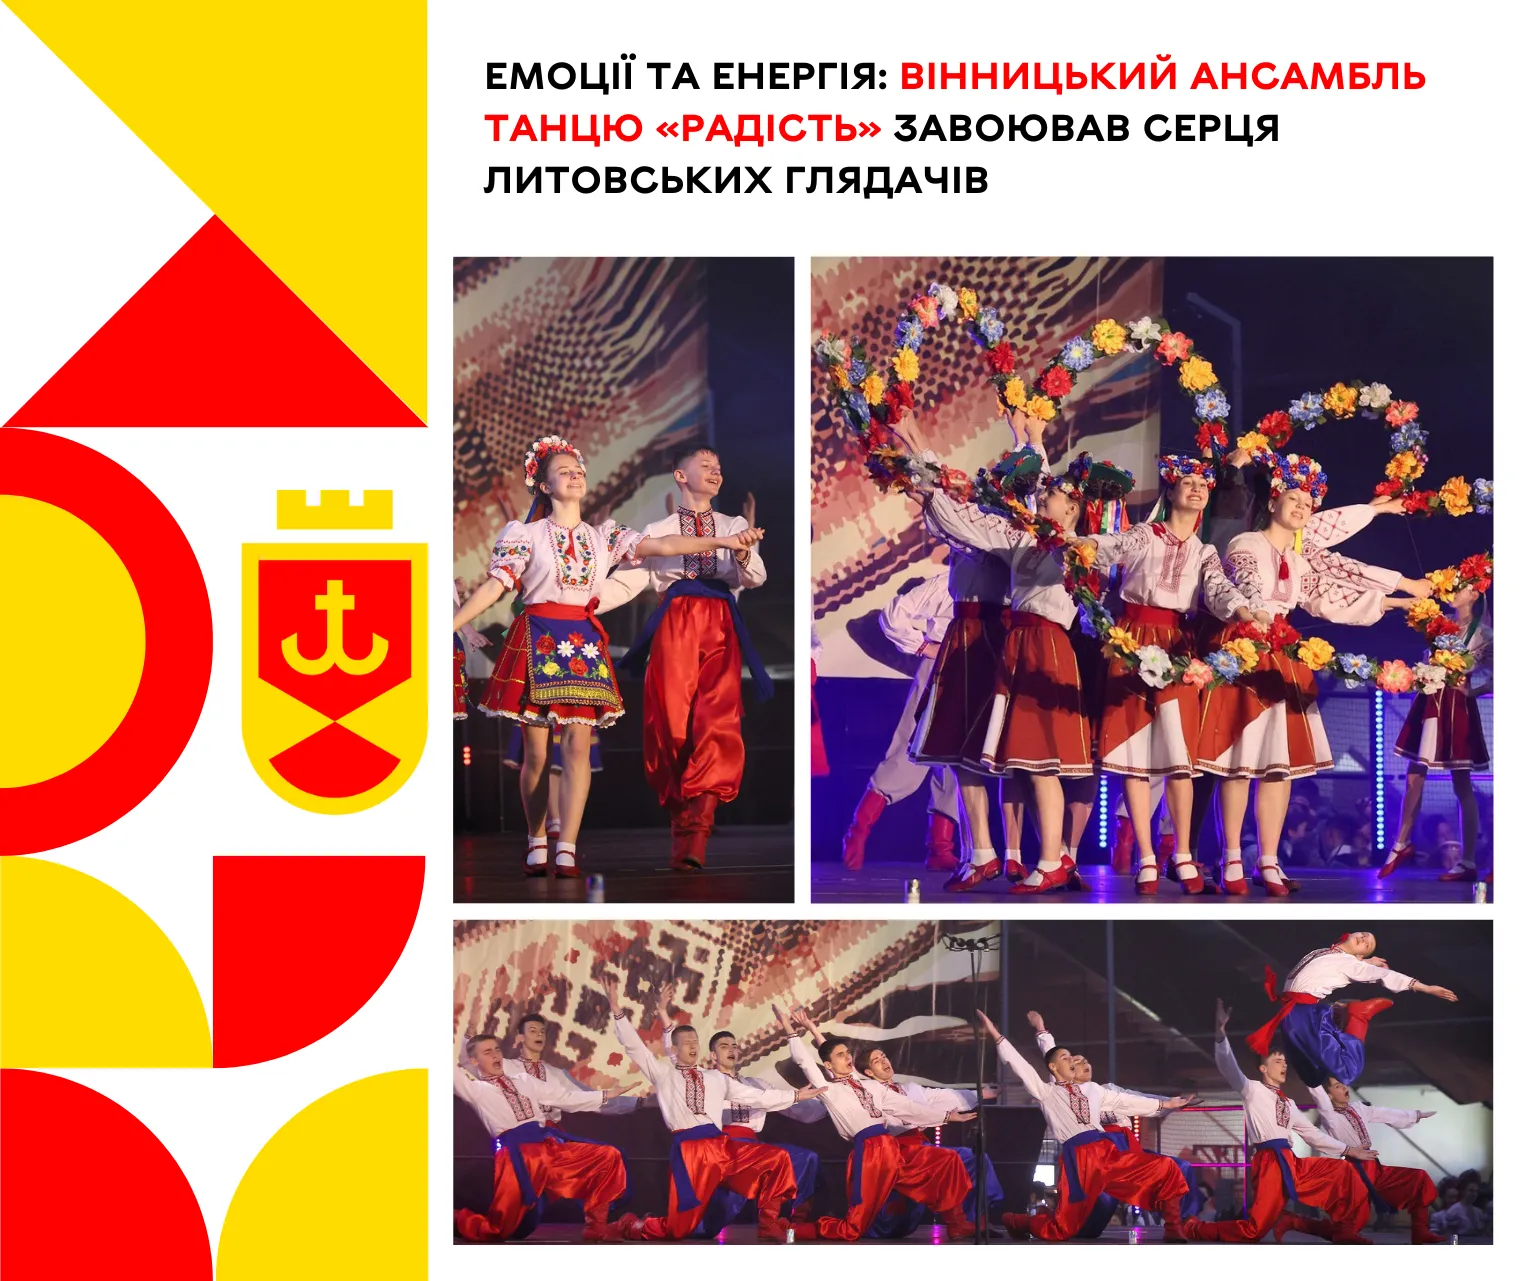 Вінницький ансамбль танцю «Радість» завоював серця литовських глядачів